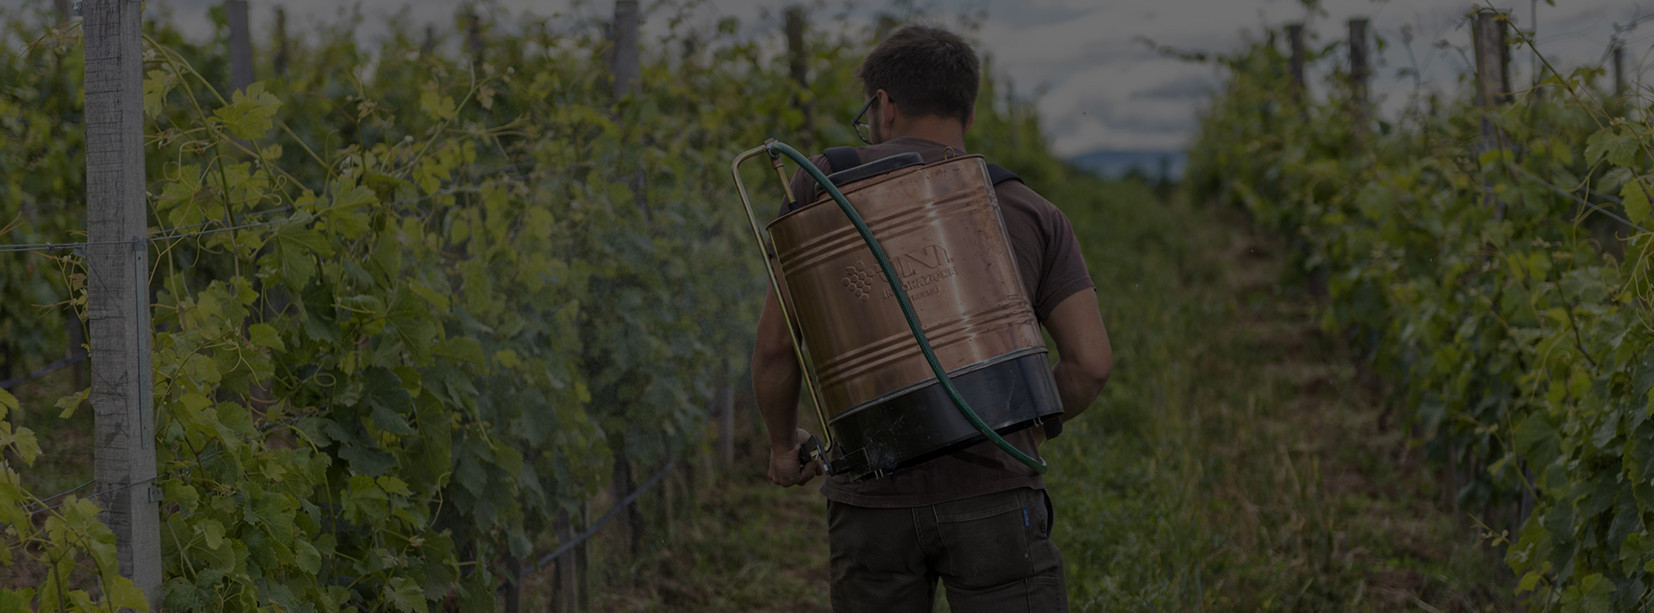 De dos, Maxime Chapoutier dans les vignes, porte le réservoir en cuivre permettant la pulvérisation sur les vignes.